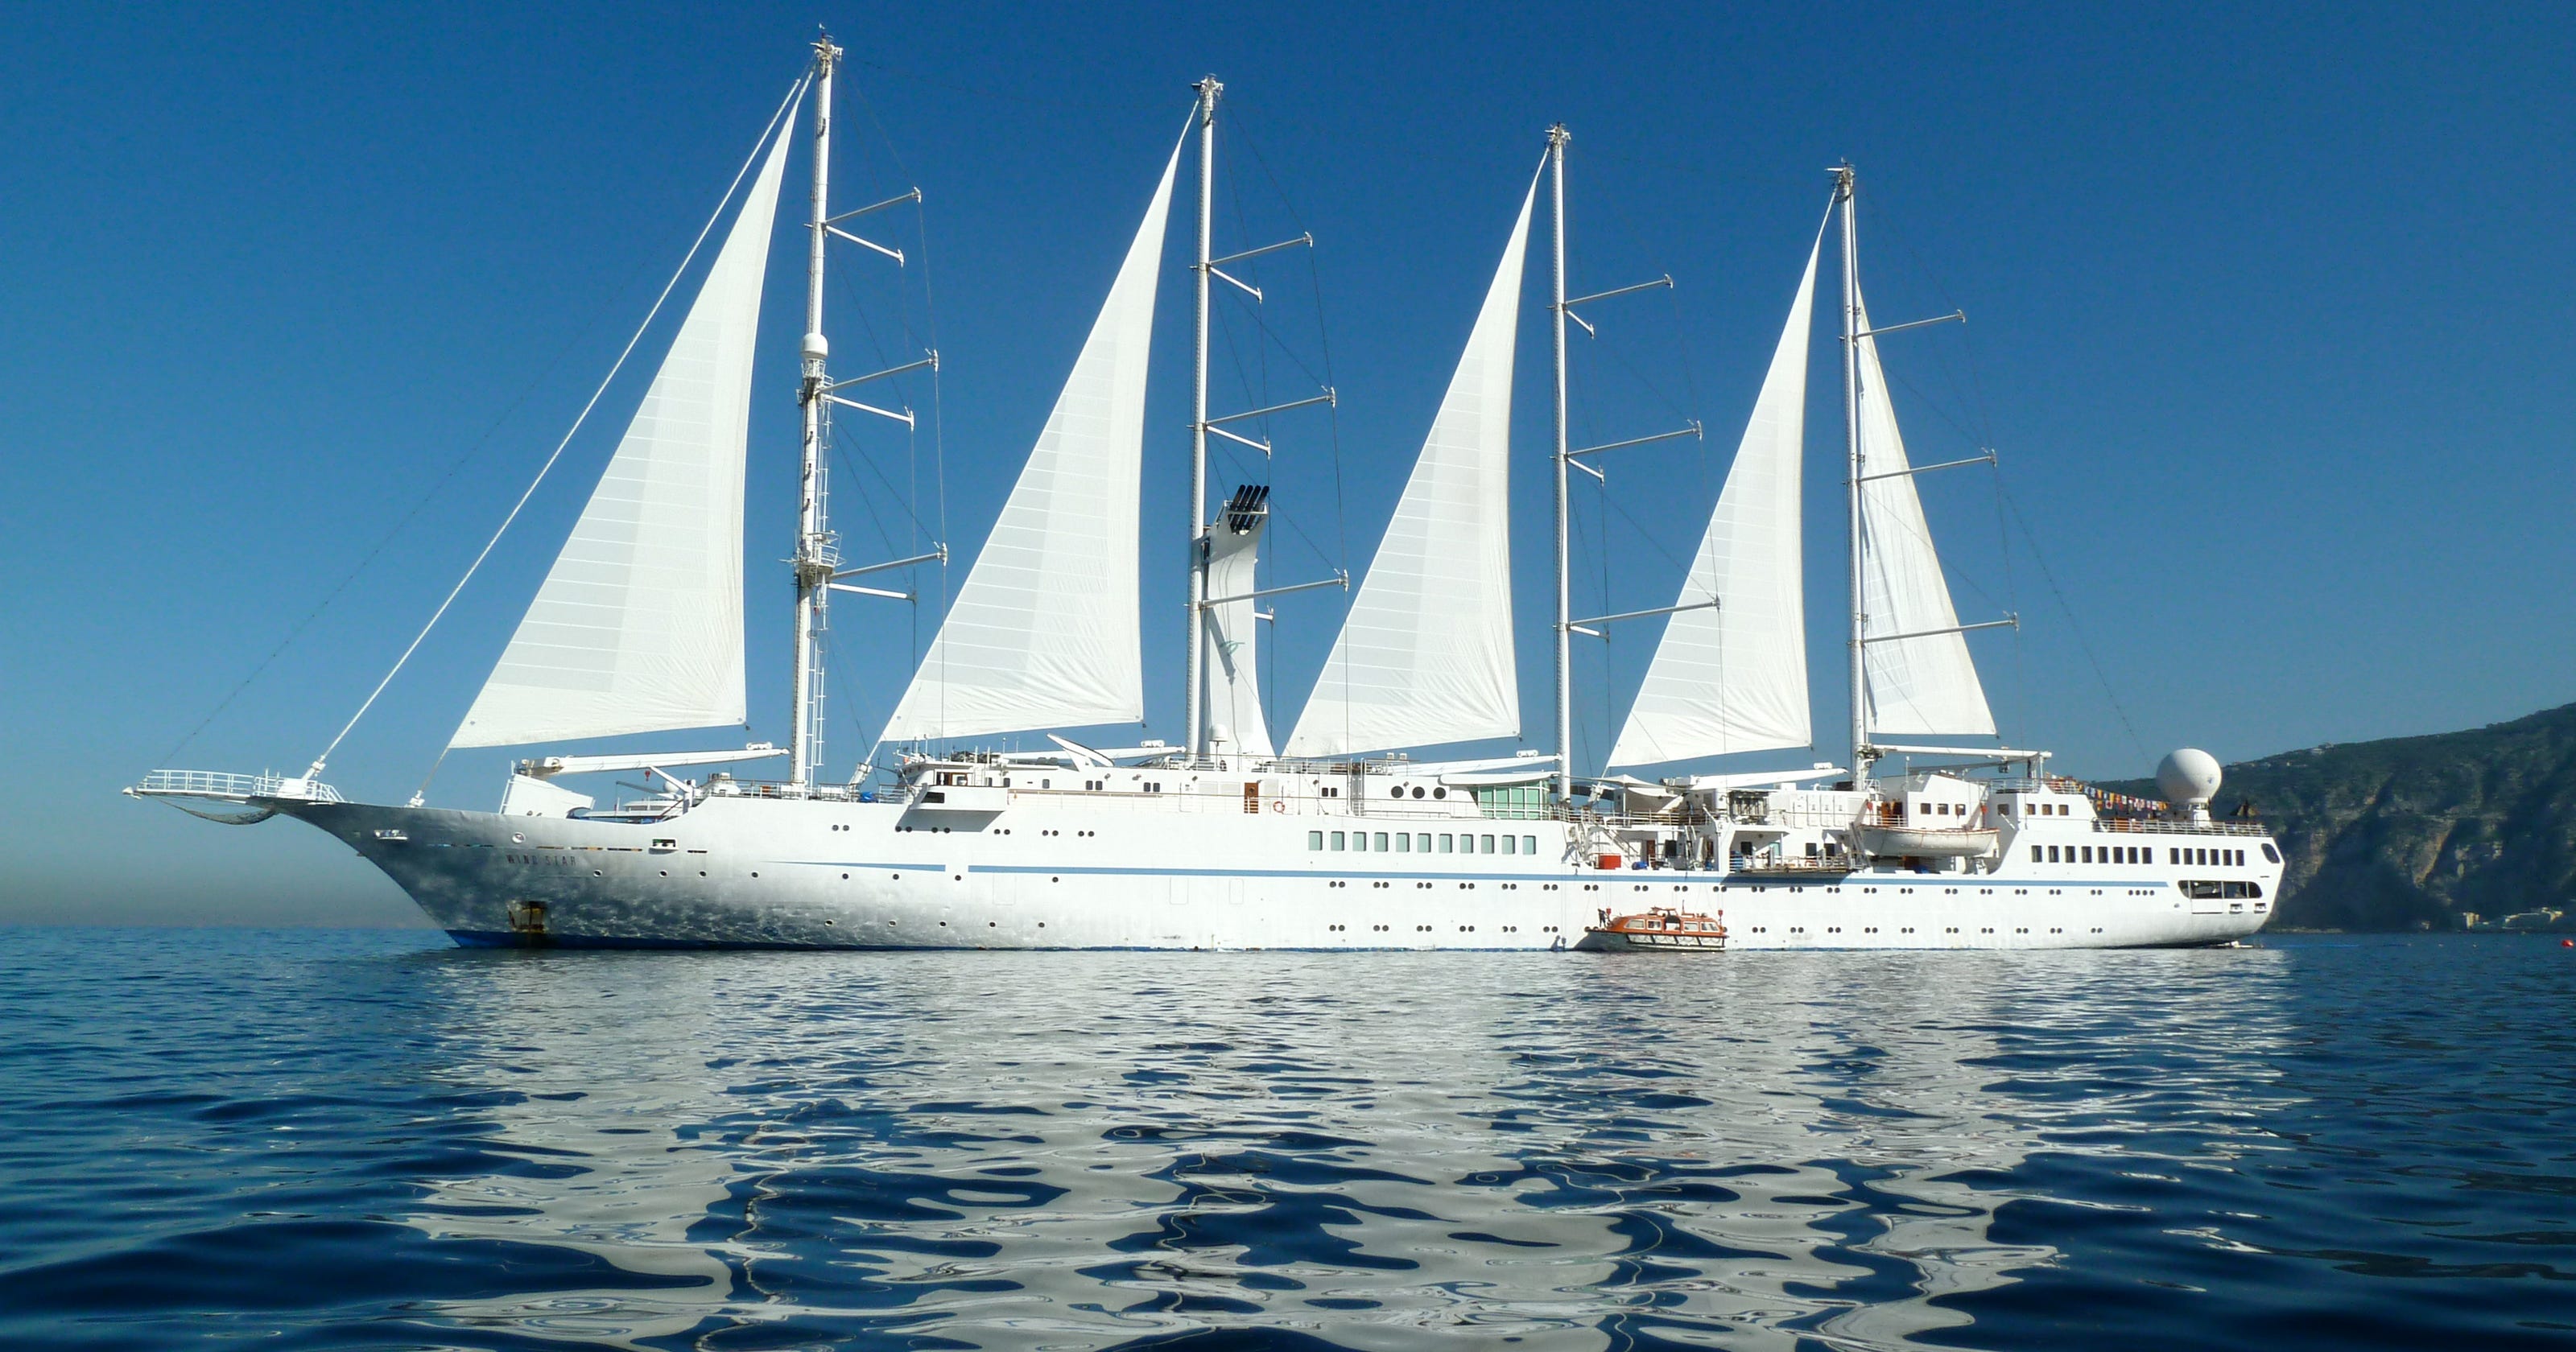 windstar cruise ship